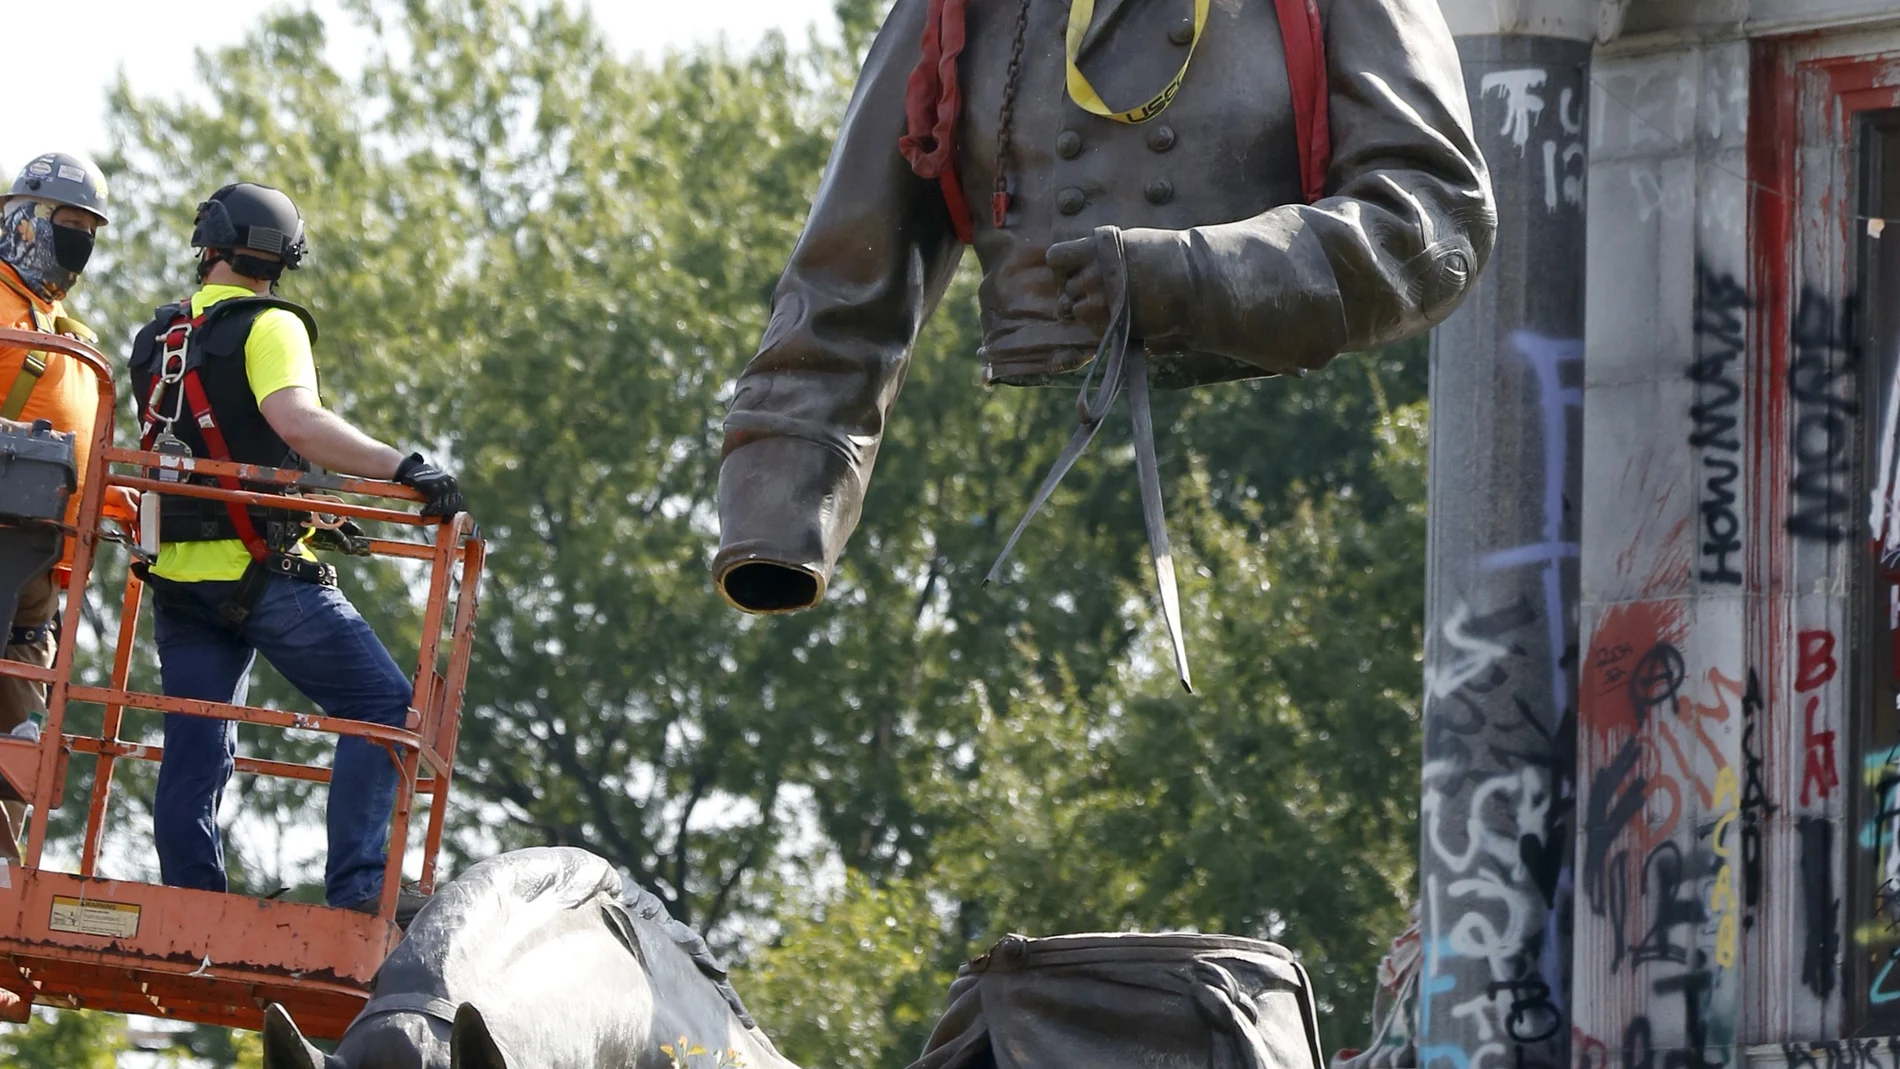 La estatua del general Lee en Richmond en el momento de ser retirada el pasado miércoles debido a las protestas raciales